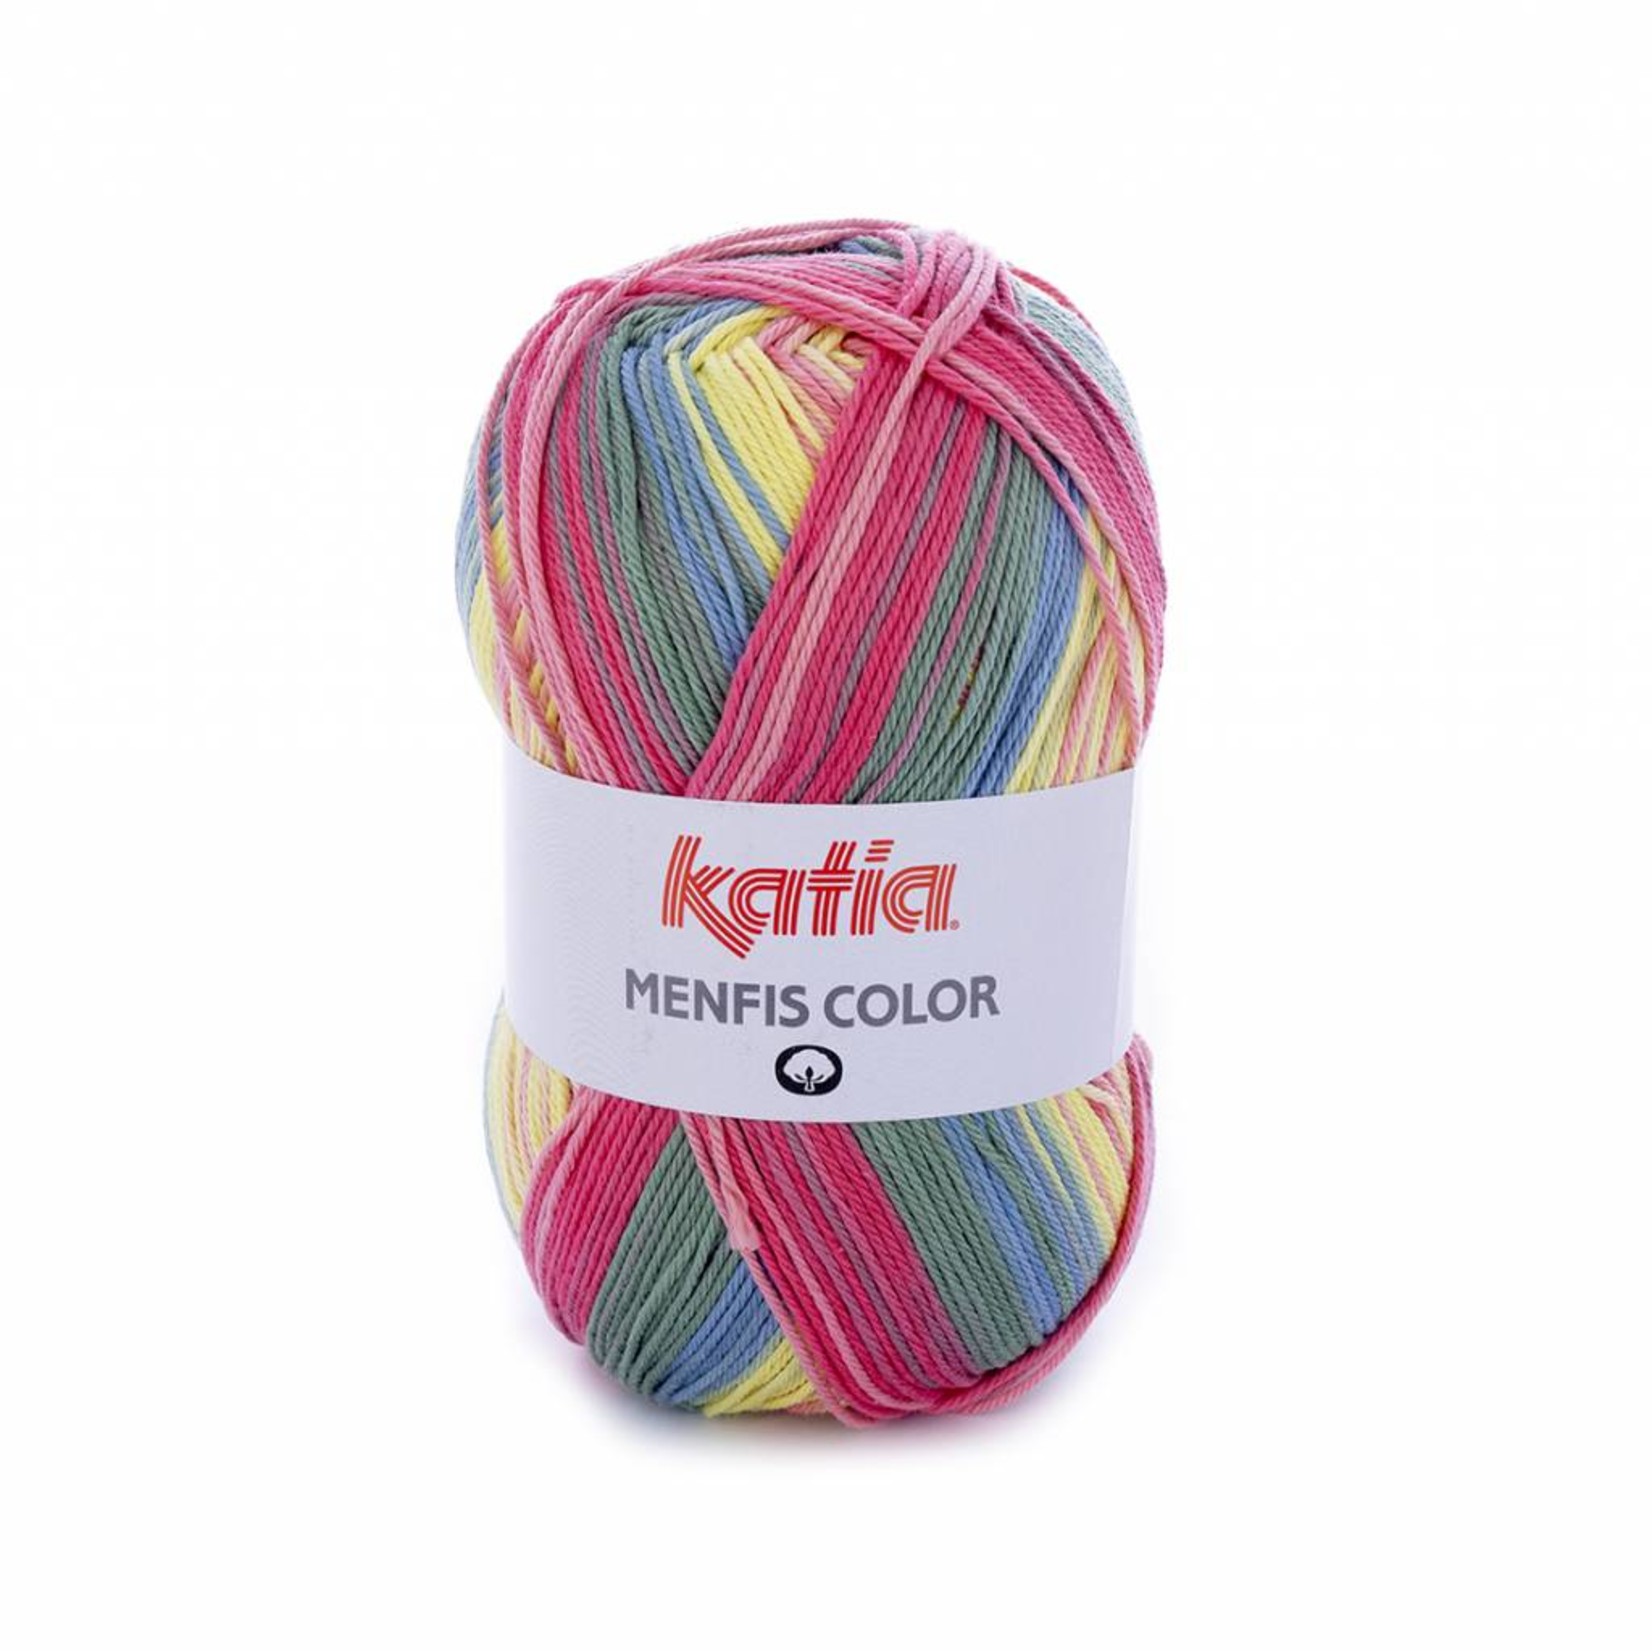 Katia Menfis Color 108 Koraal-Roos-Geel-Blauw